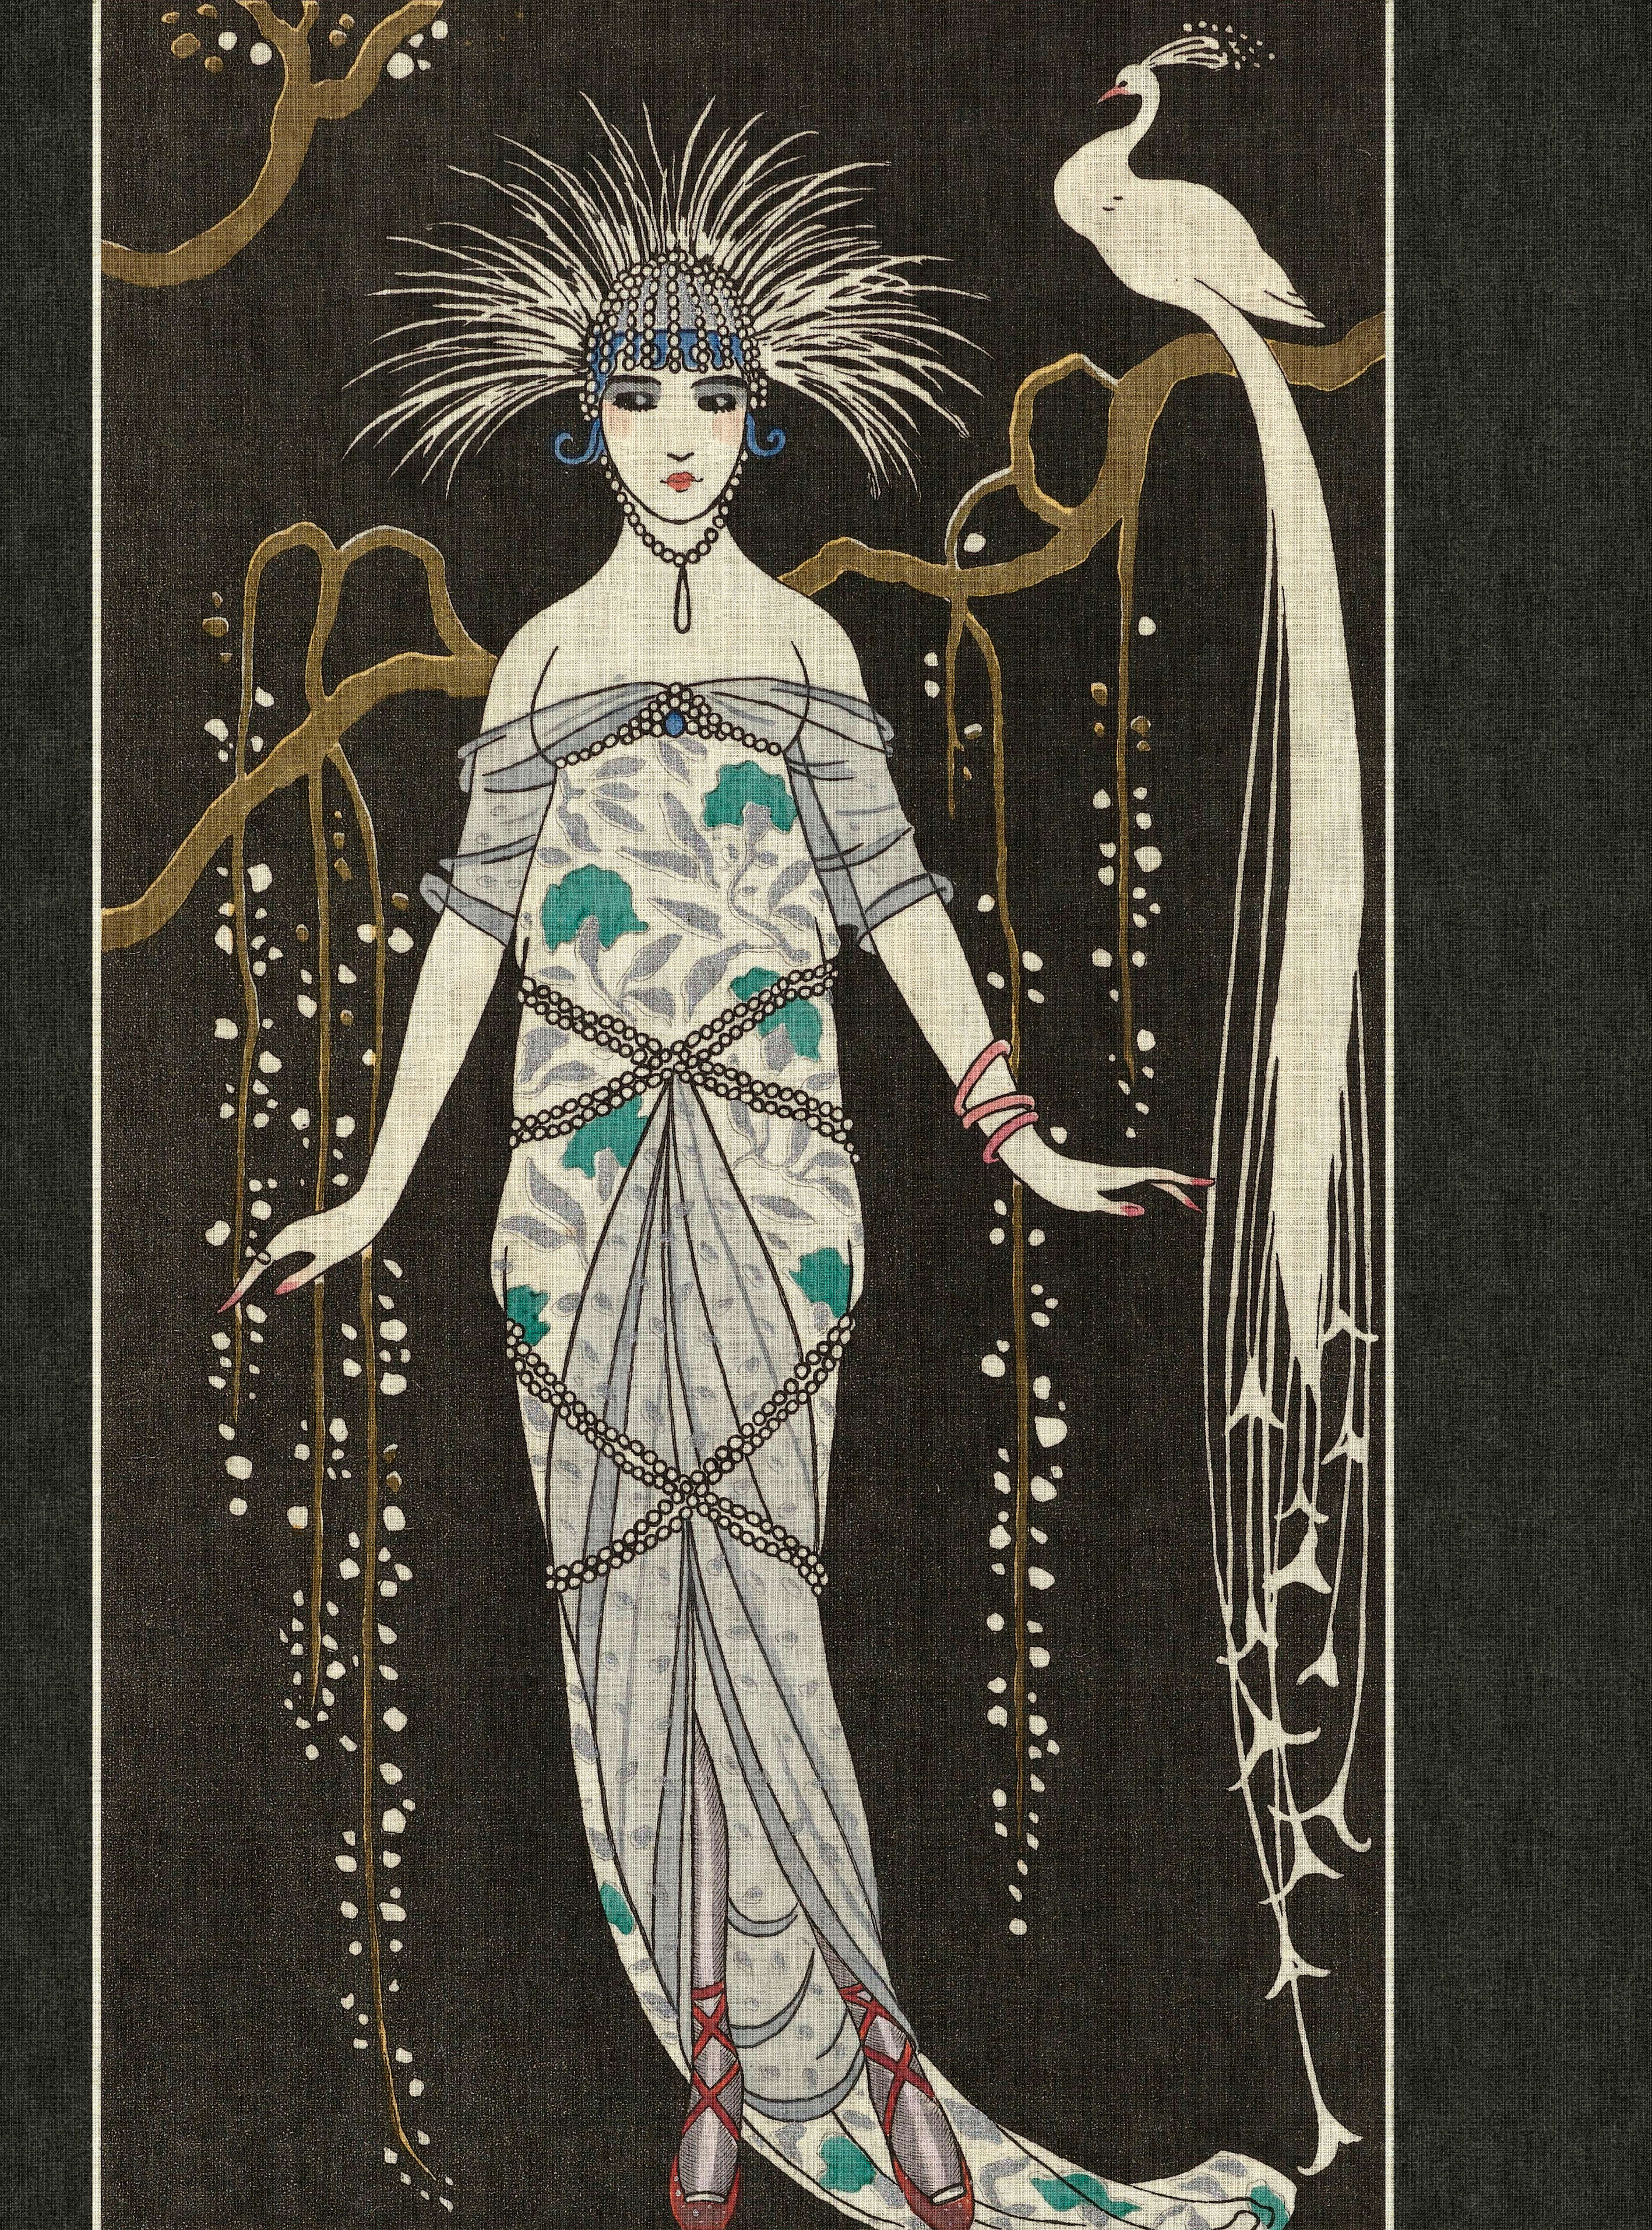             Adlon 1 - papier peint vintage femme motif années 20
        